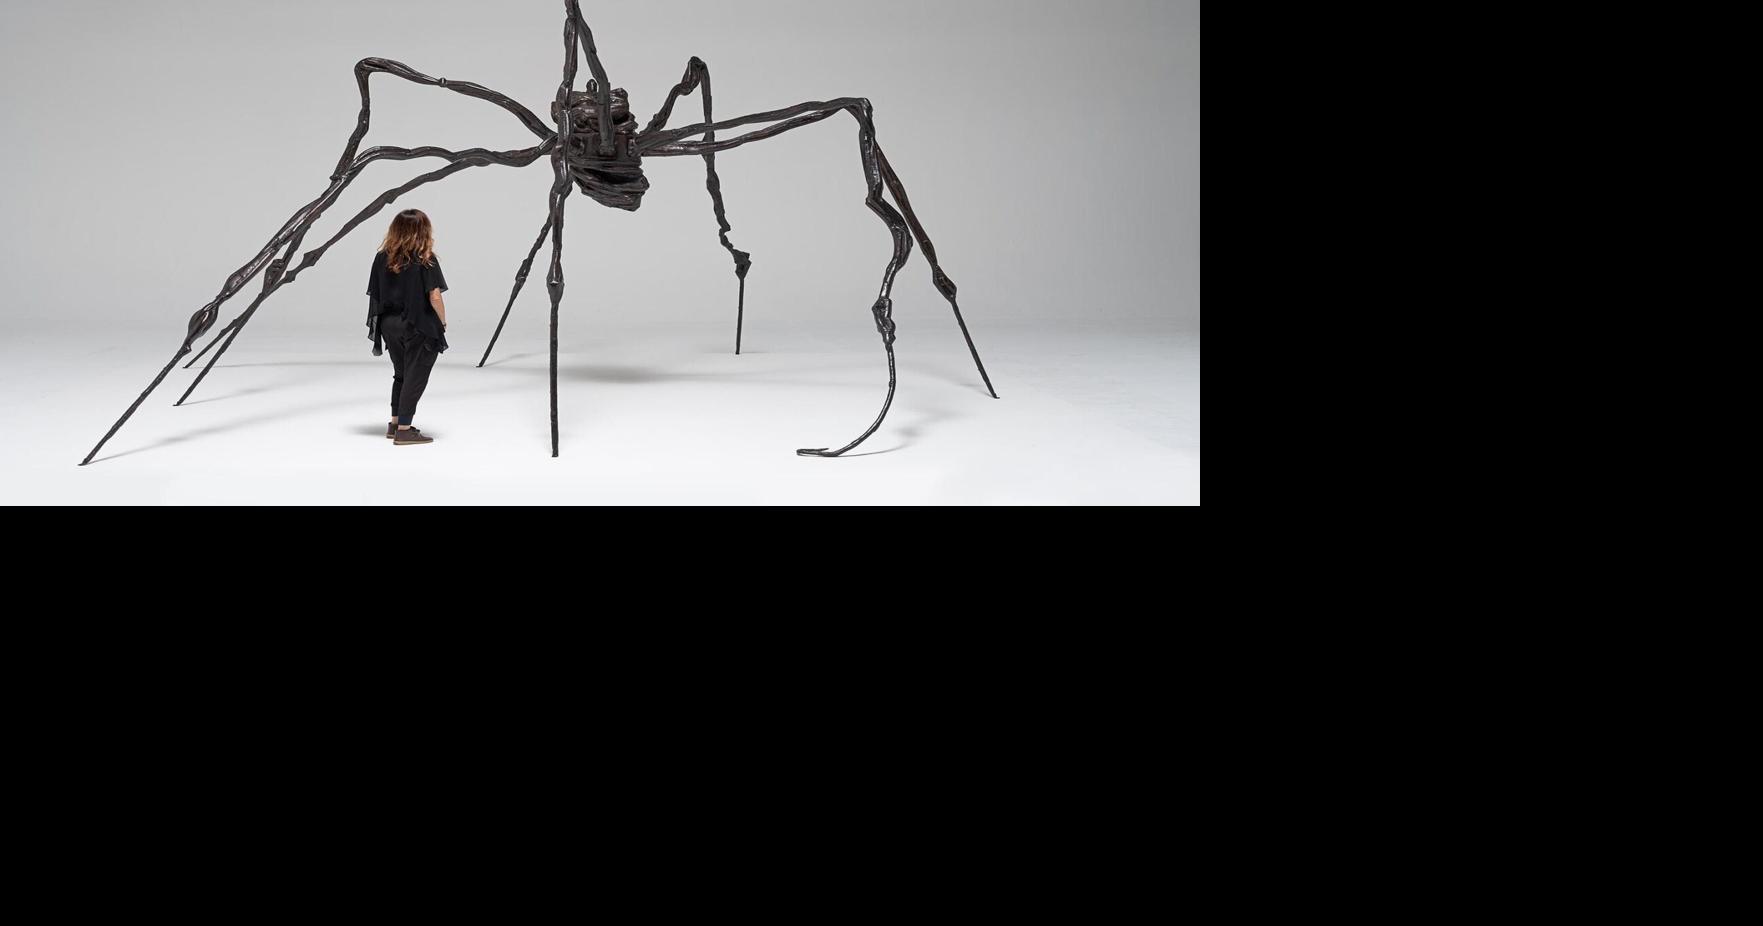 Estátua de aranha gigante vendida em leilão por US$ 32,8 milhões |  entretenimento